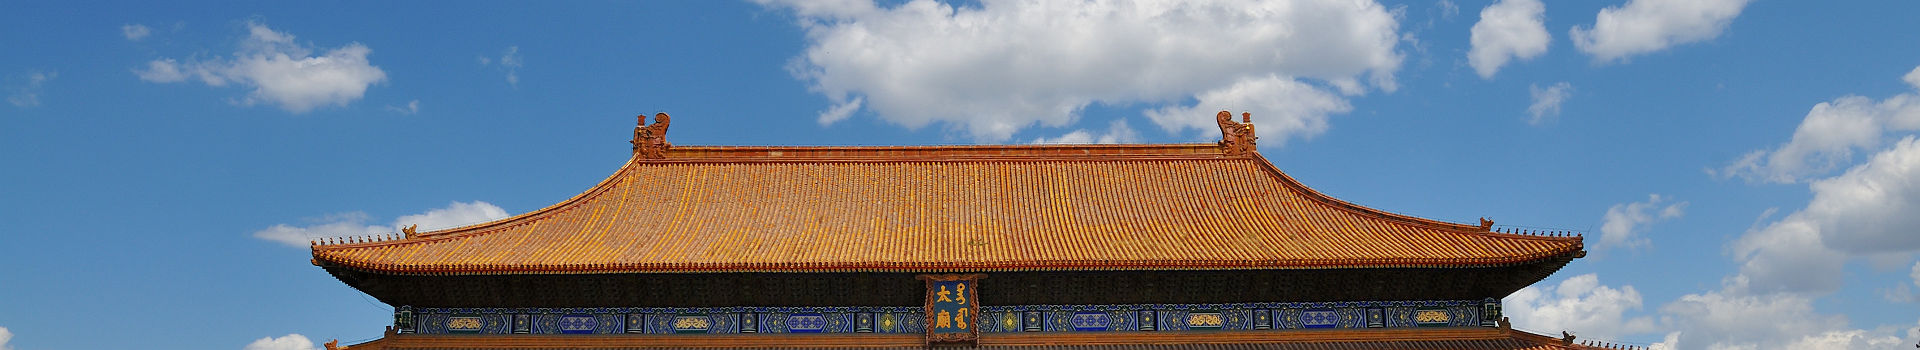 Temple des ancêtres impériaux à Pékin - Chine